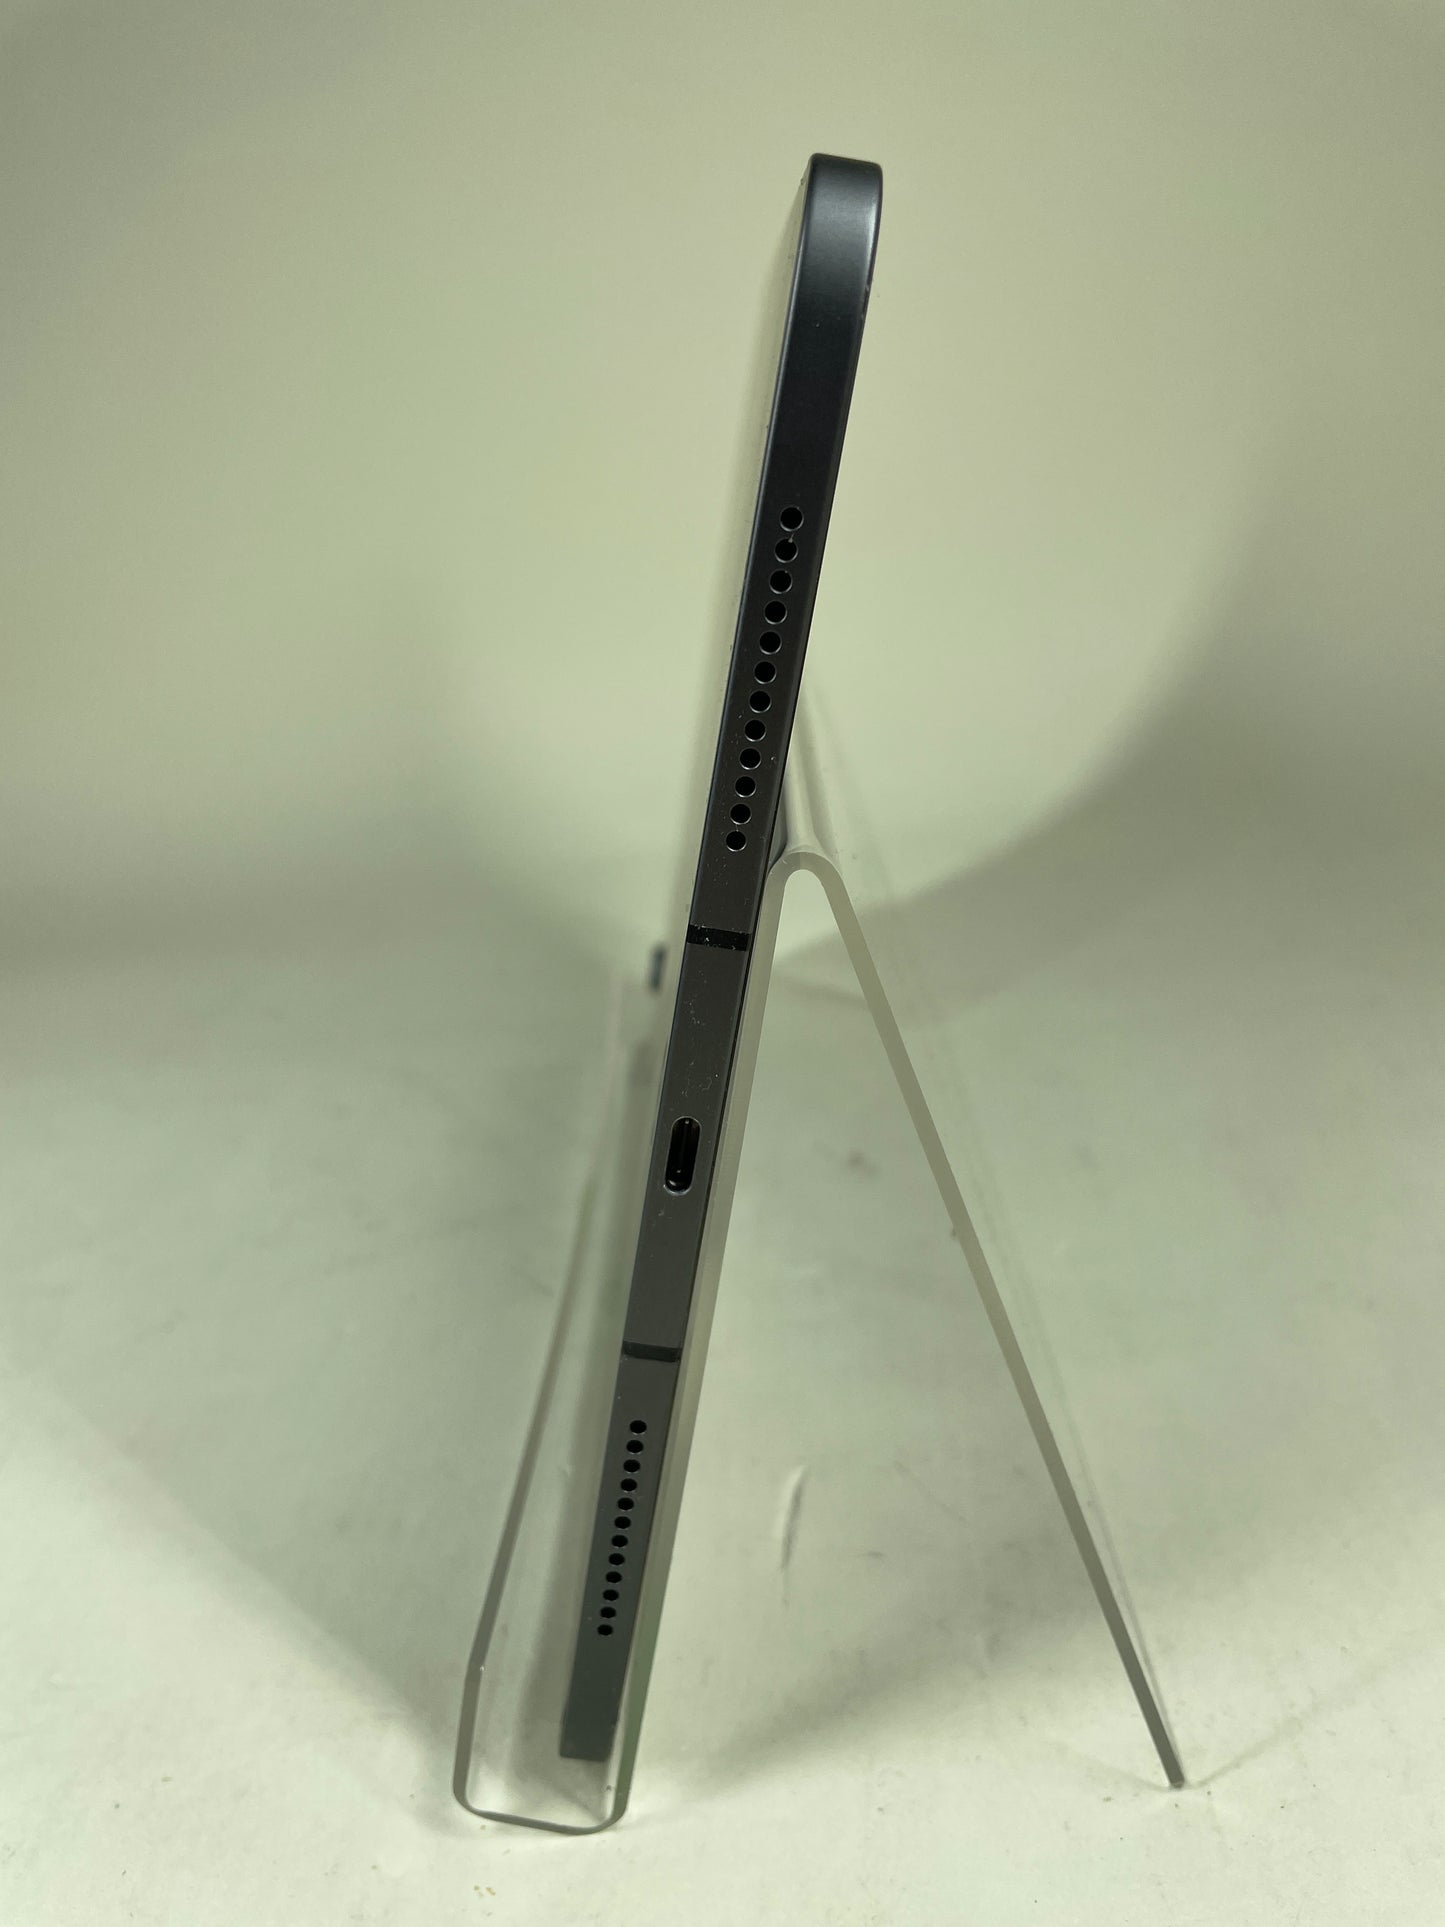 Broken Unlocked Apple iPad 4th Gen 64GB 14.5.1 MYHX2LL/A